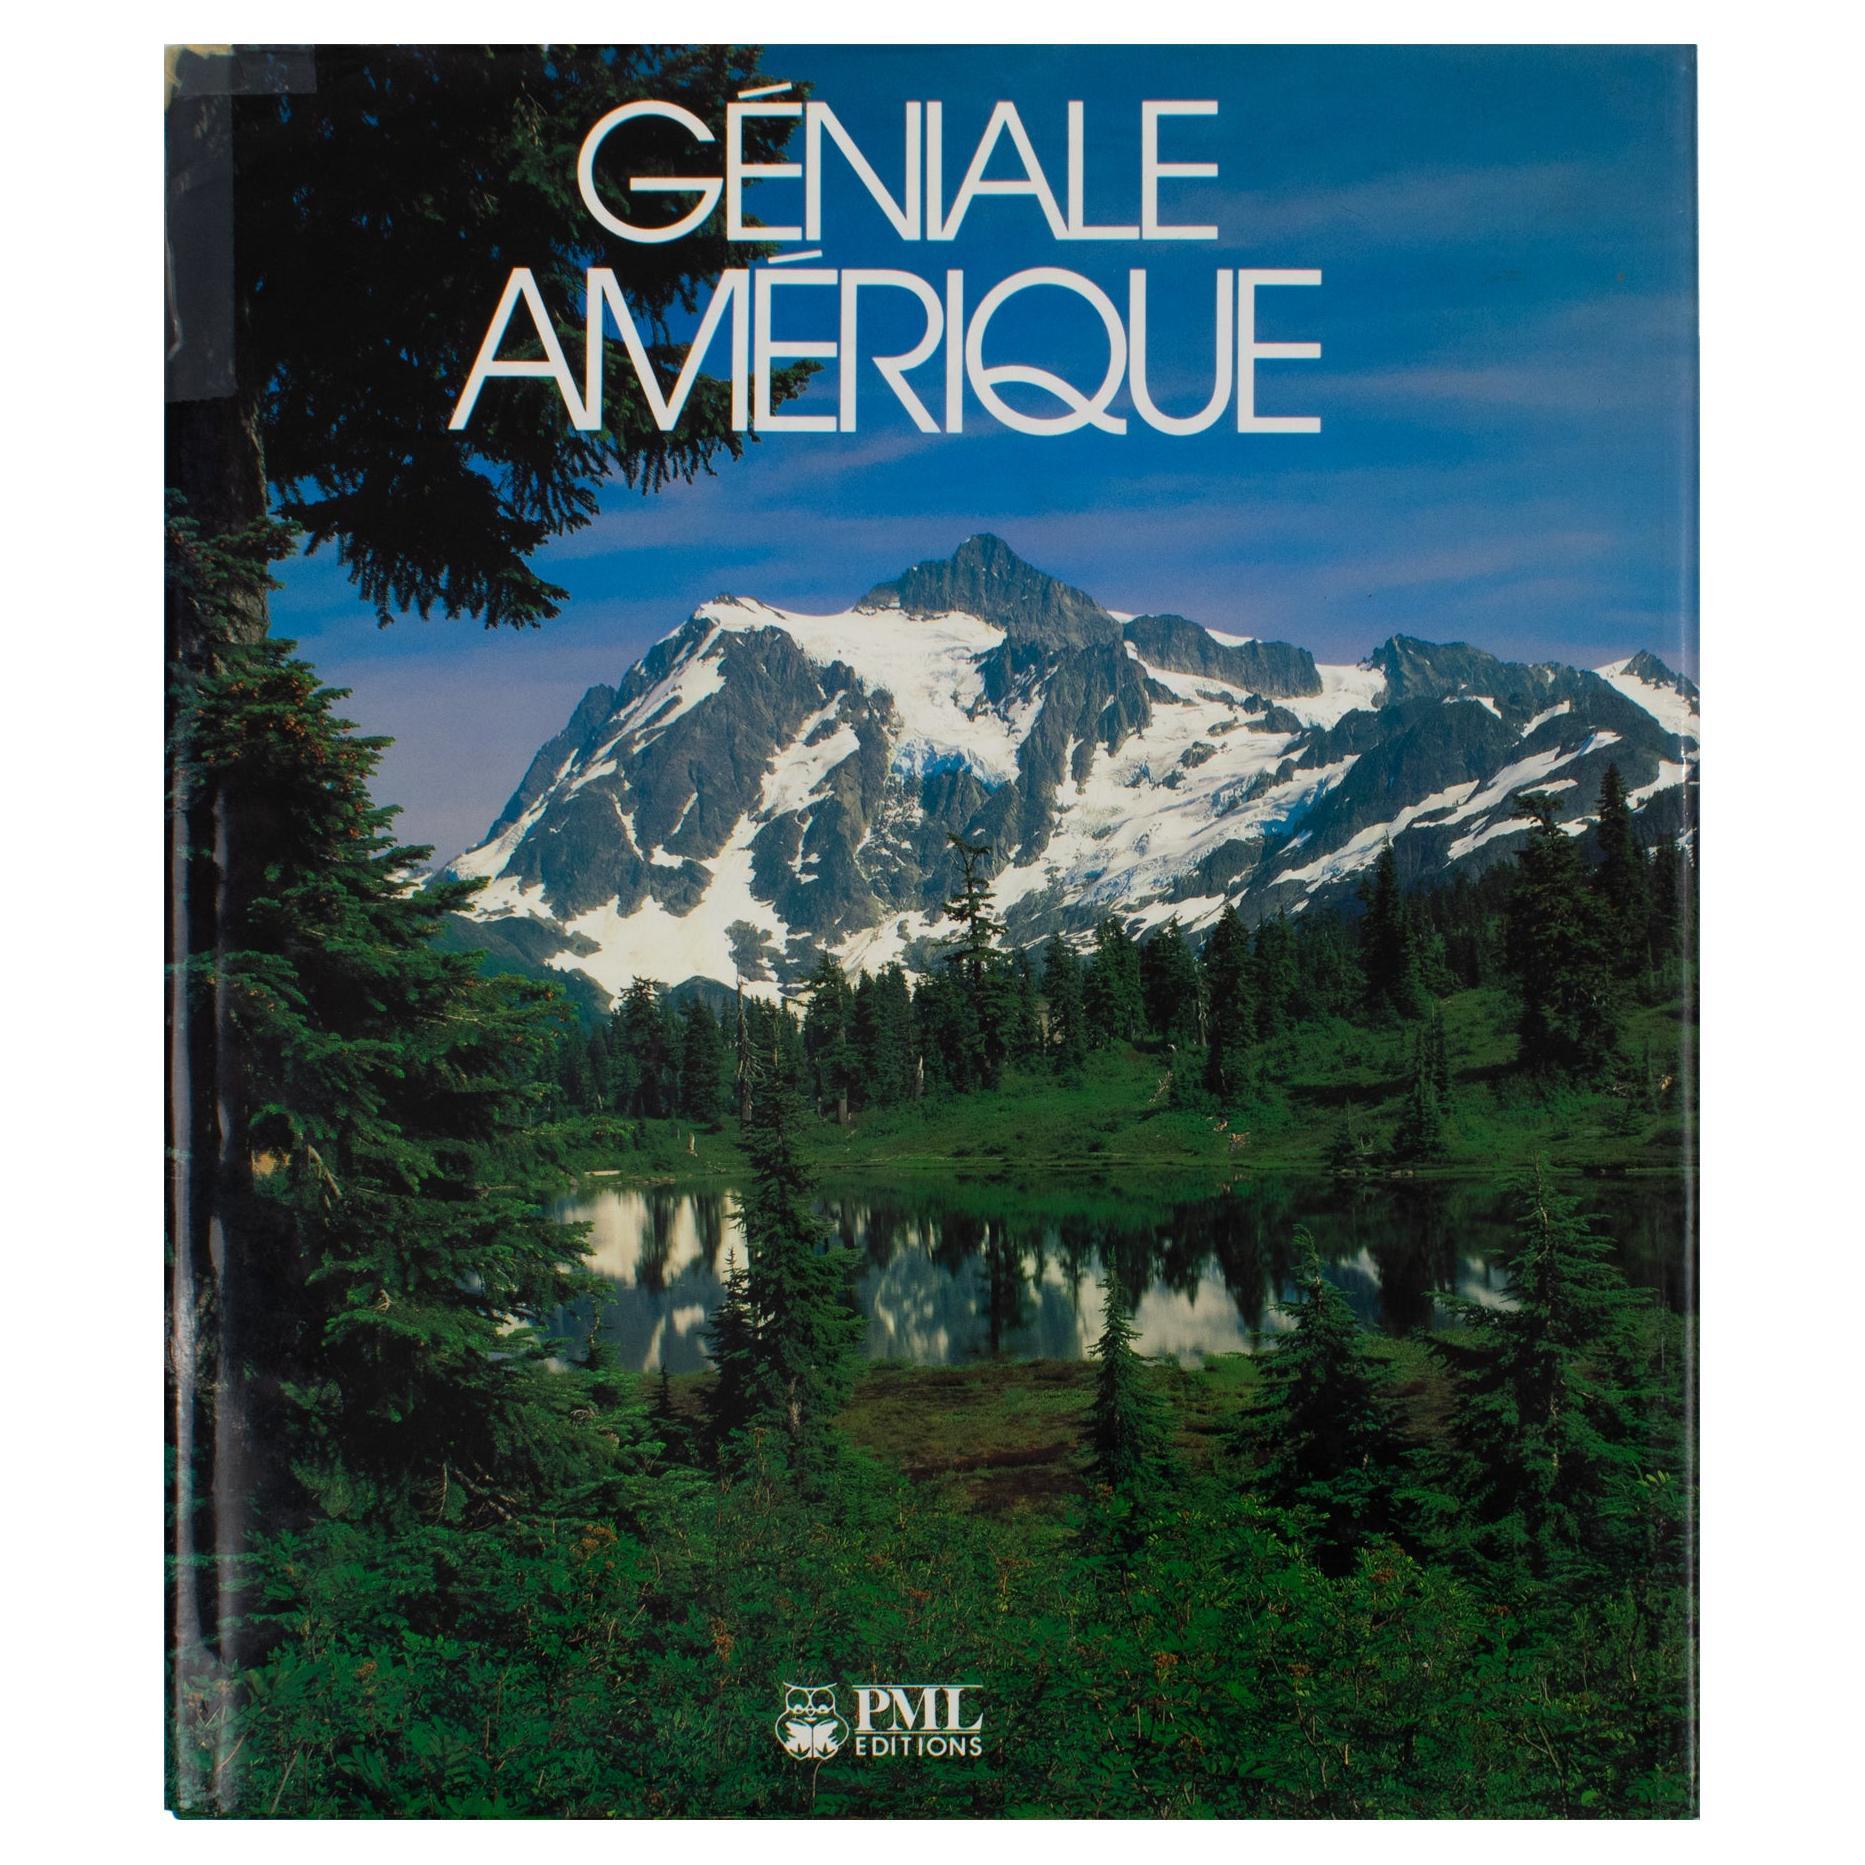 Livre français par PML Editions, 1988